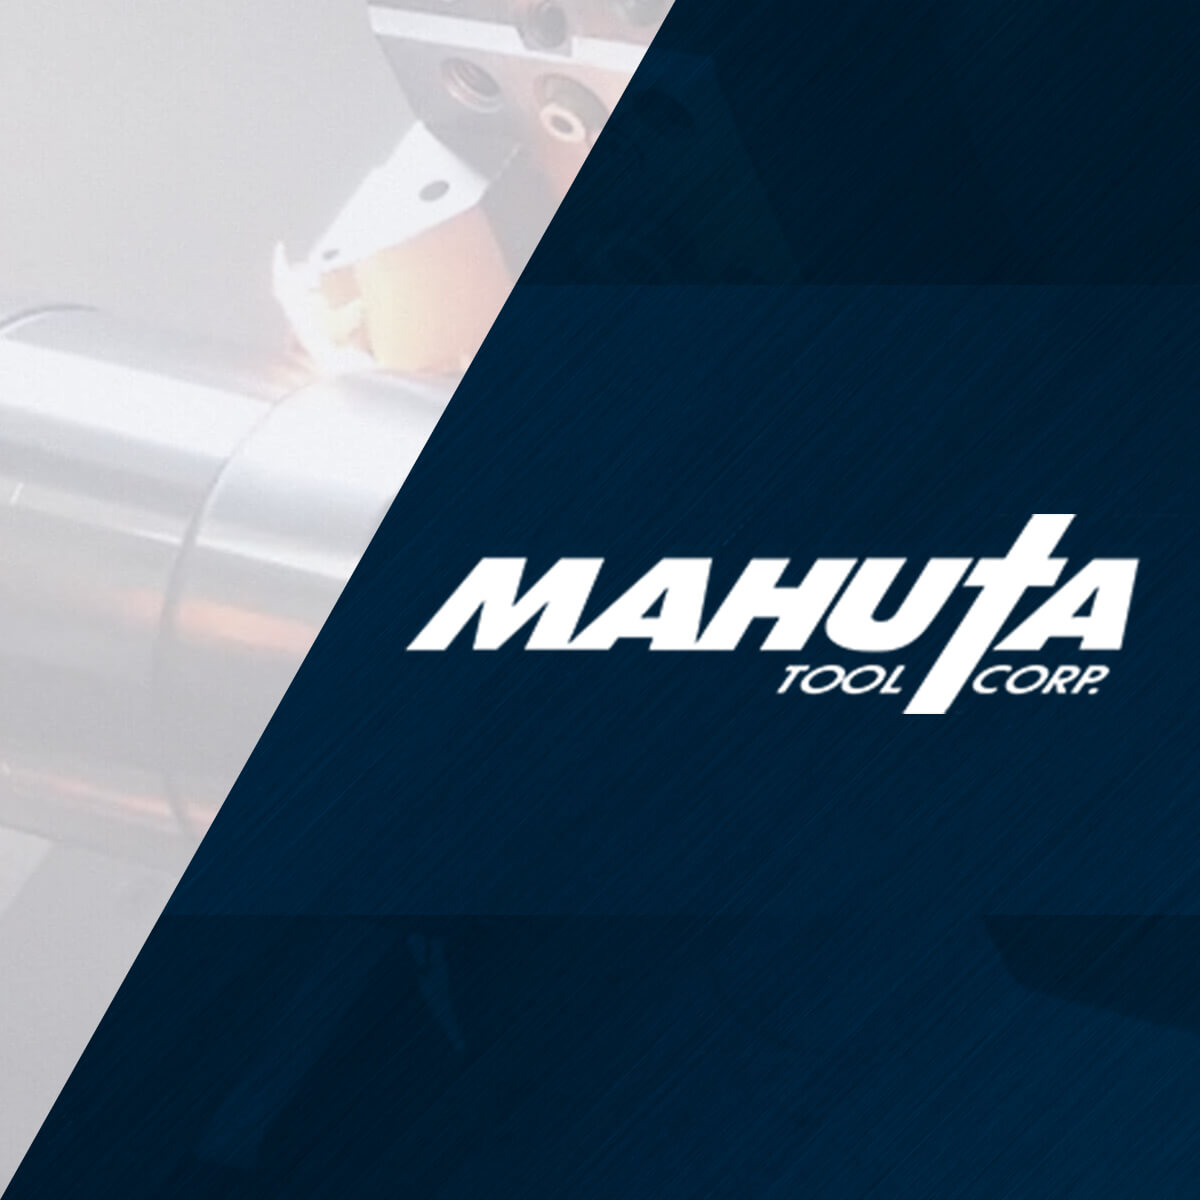 Mahuta Tool Corp